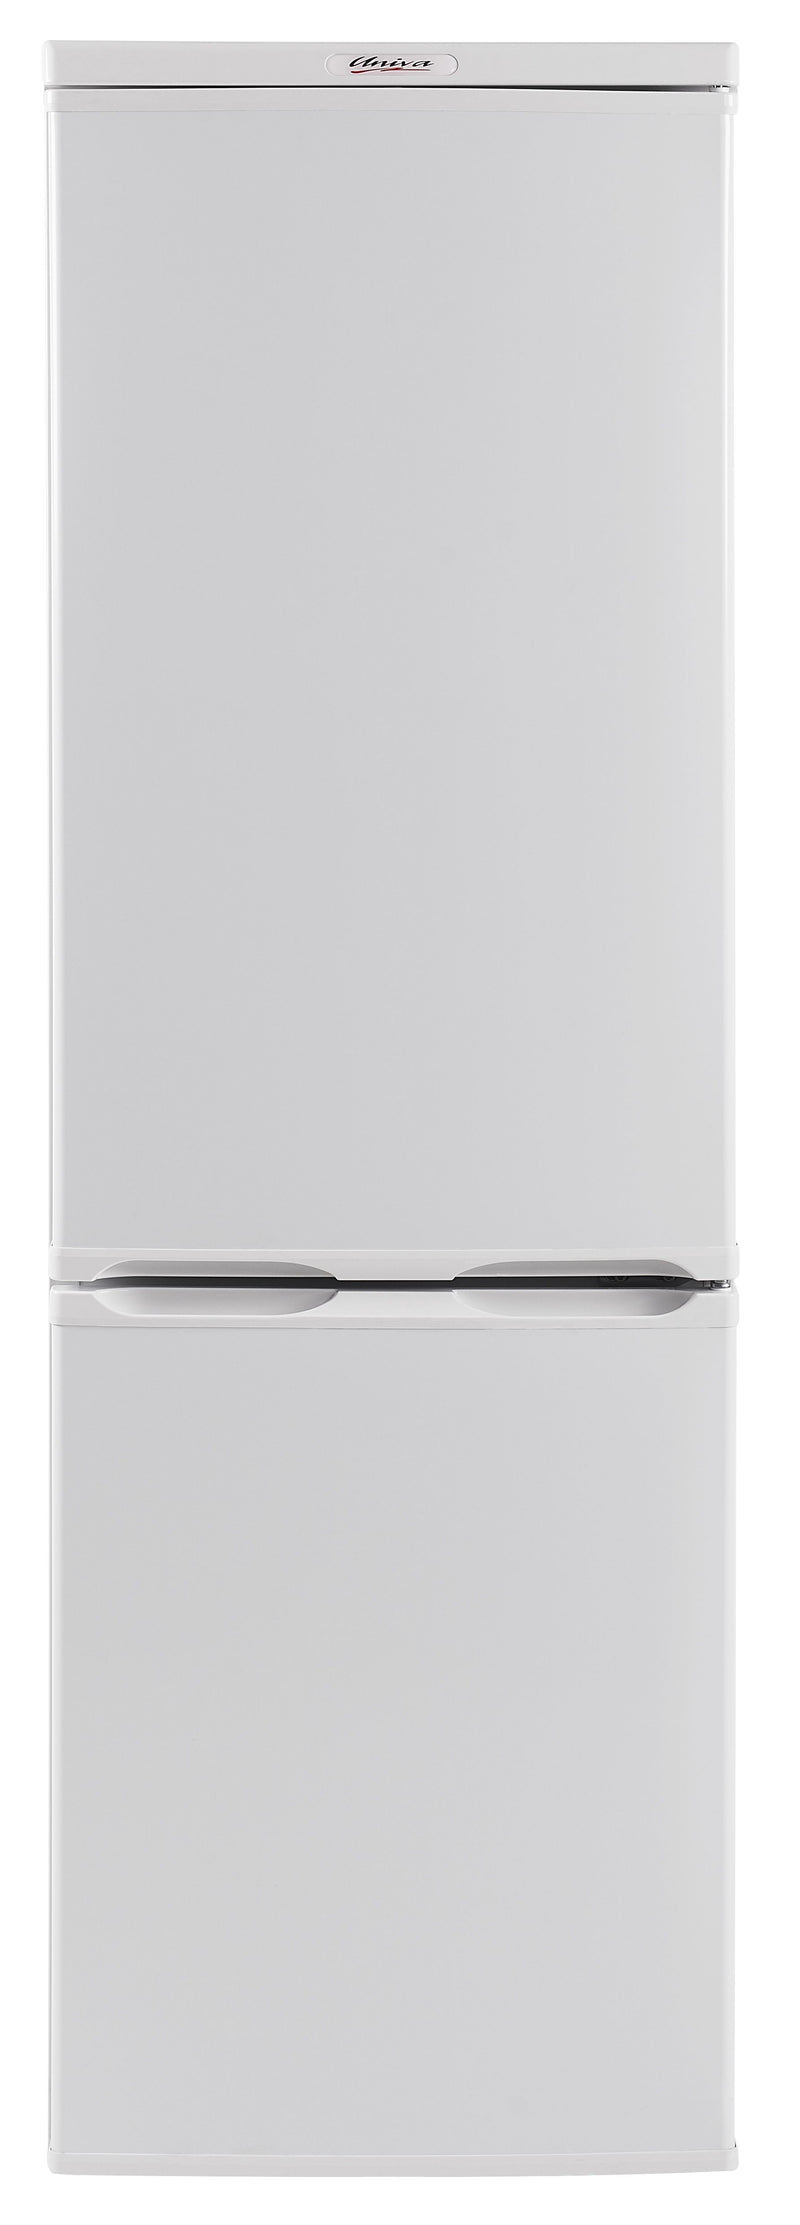 Univa Refrigerator BOTTOM FREEZER 201L White